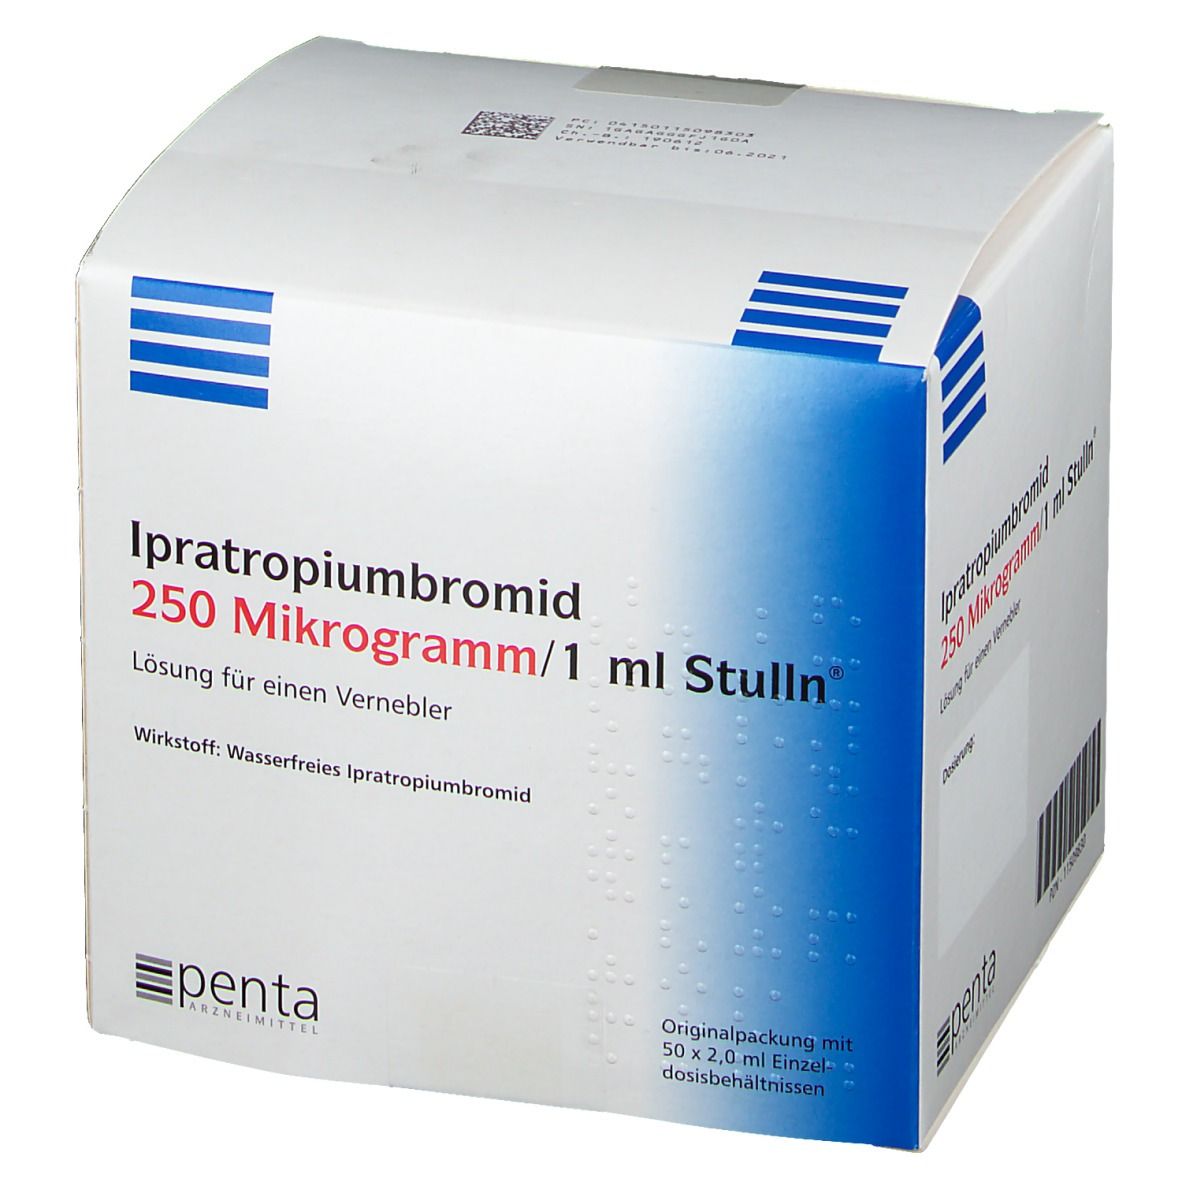 Ipratropiumbromid 250 µg/1 ml Stulln®